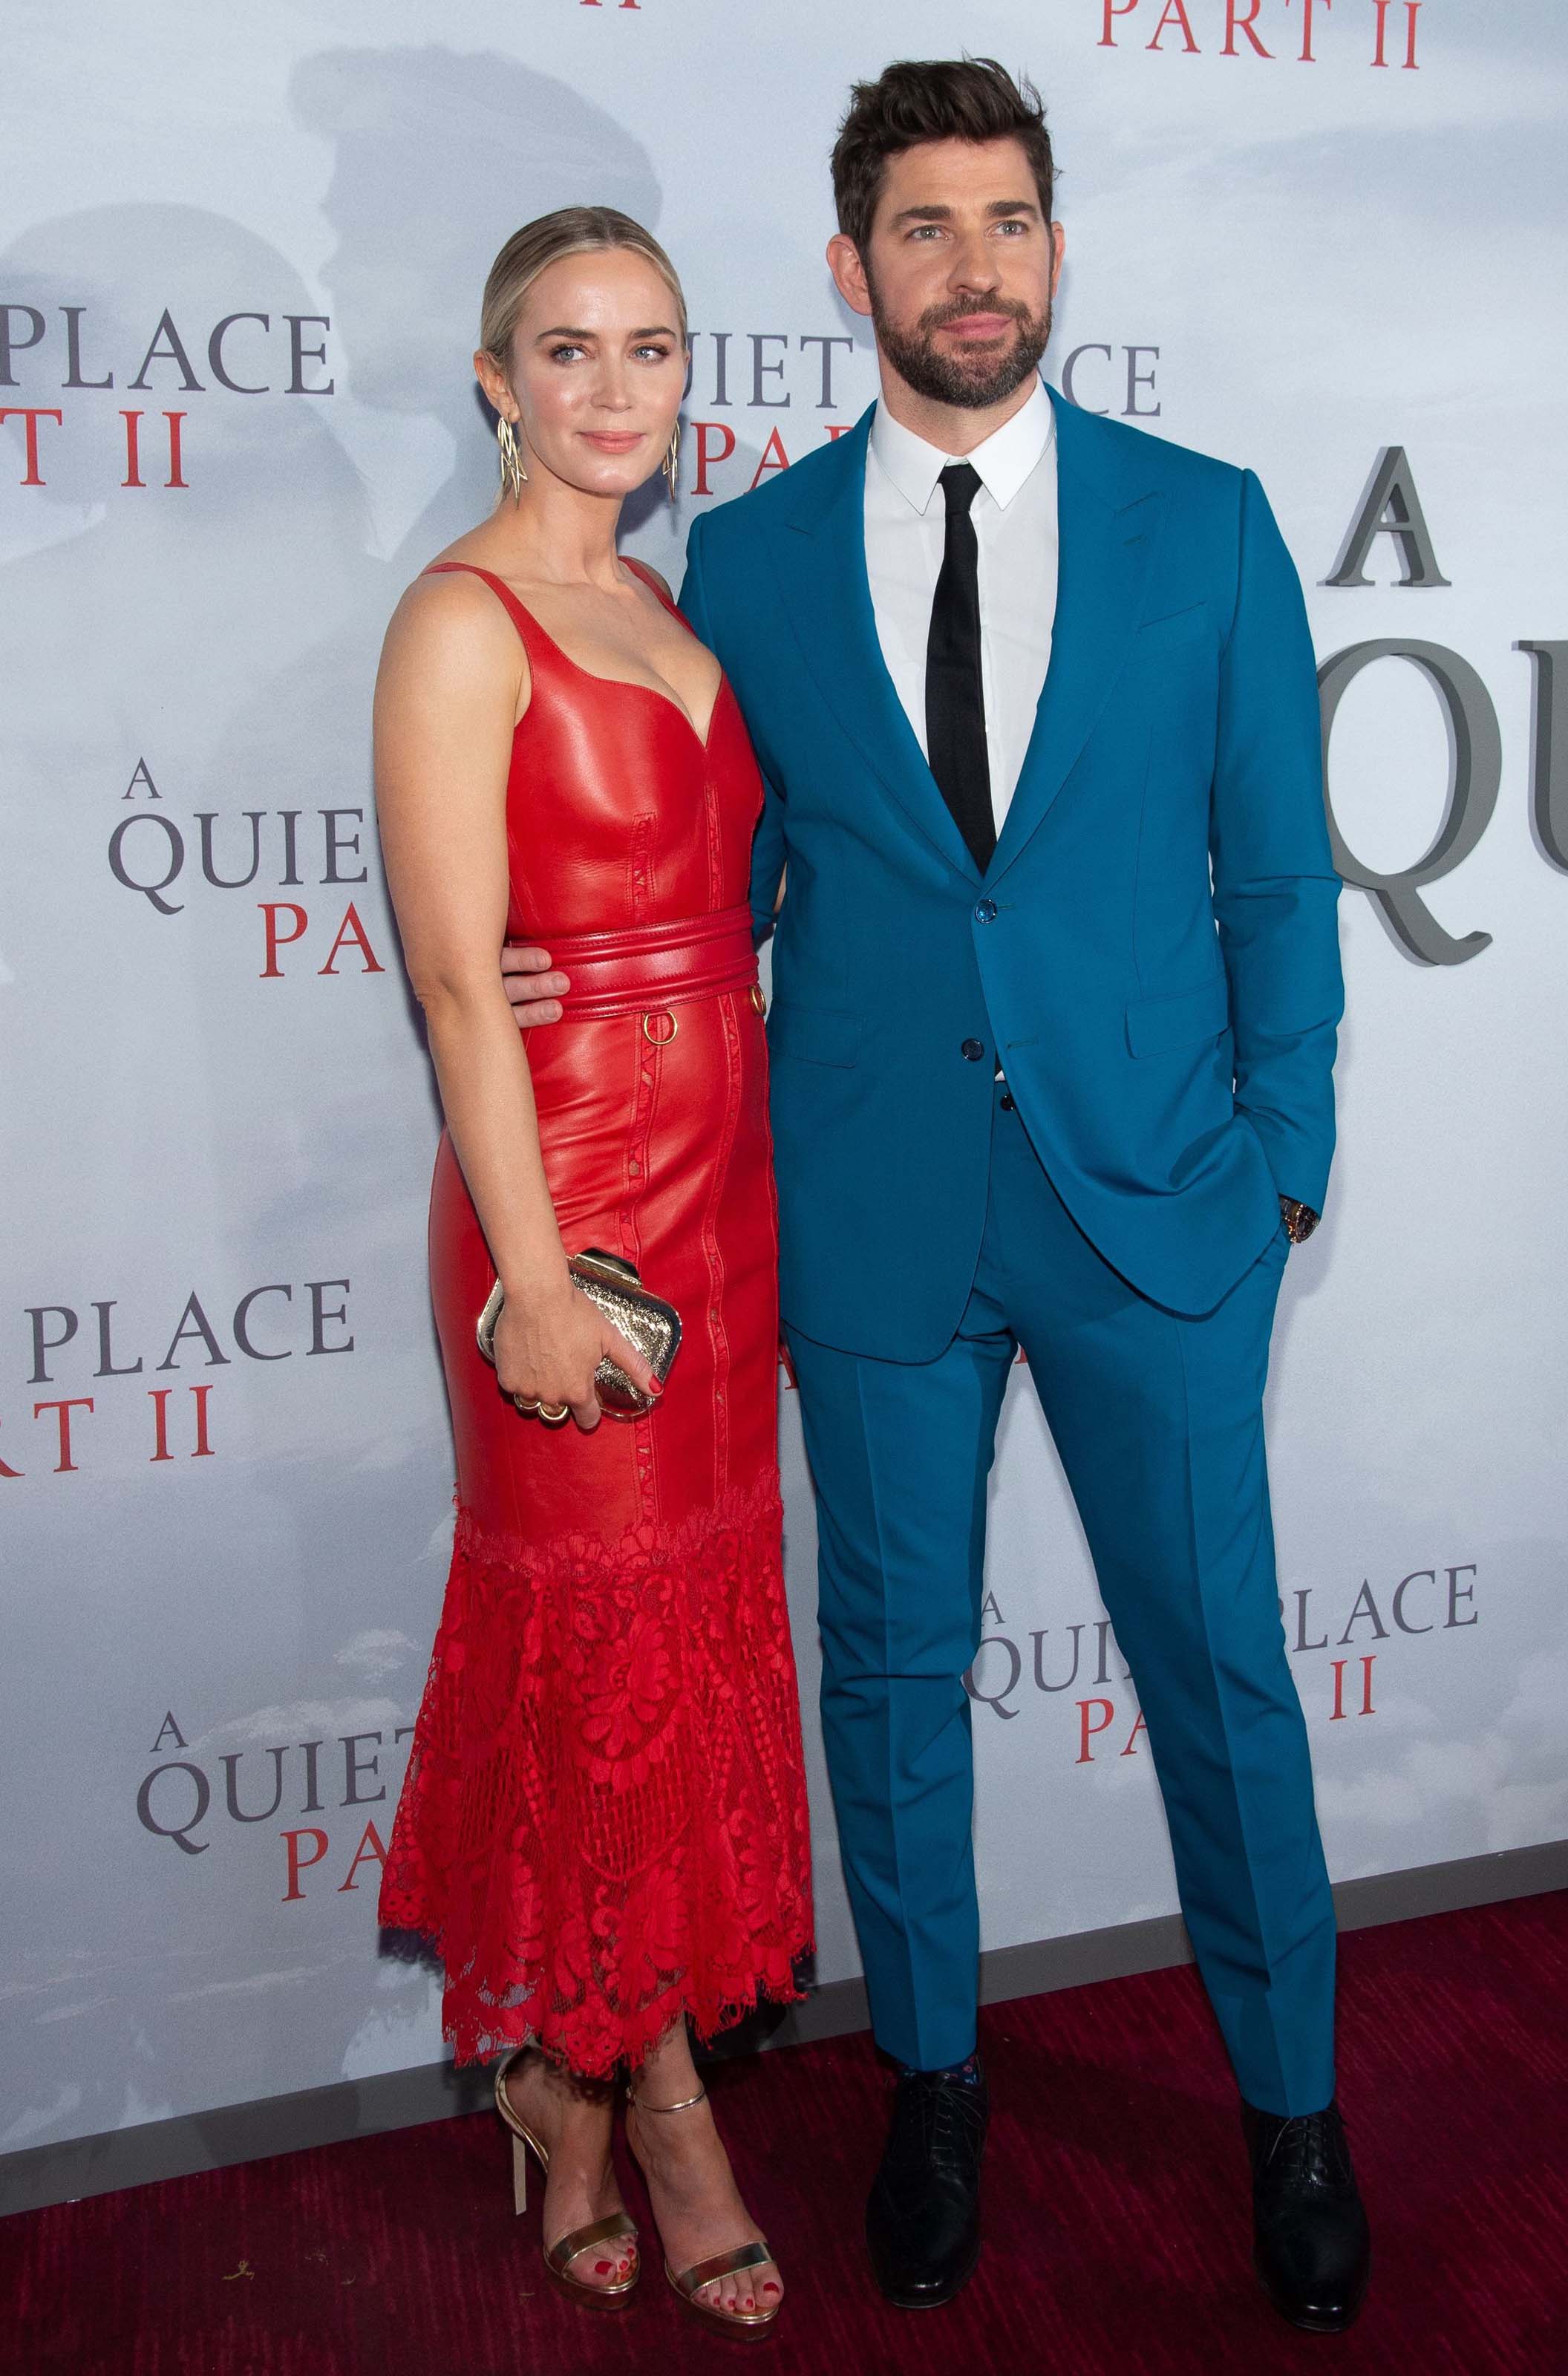 Emily Blunt attends A Quiet Place Part II premiere